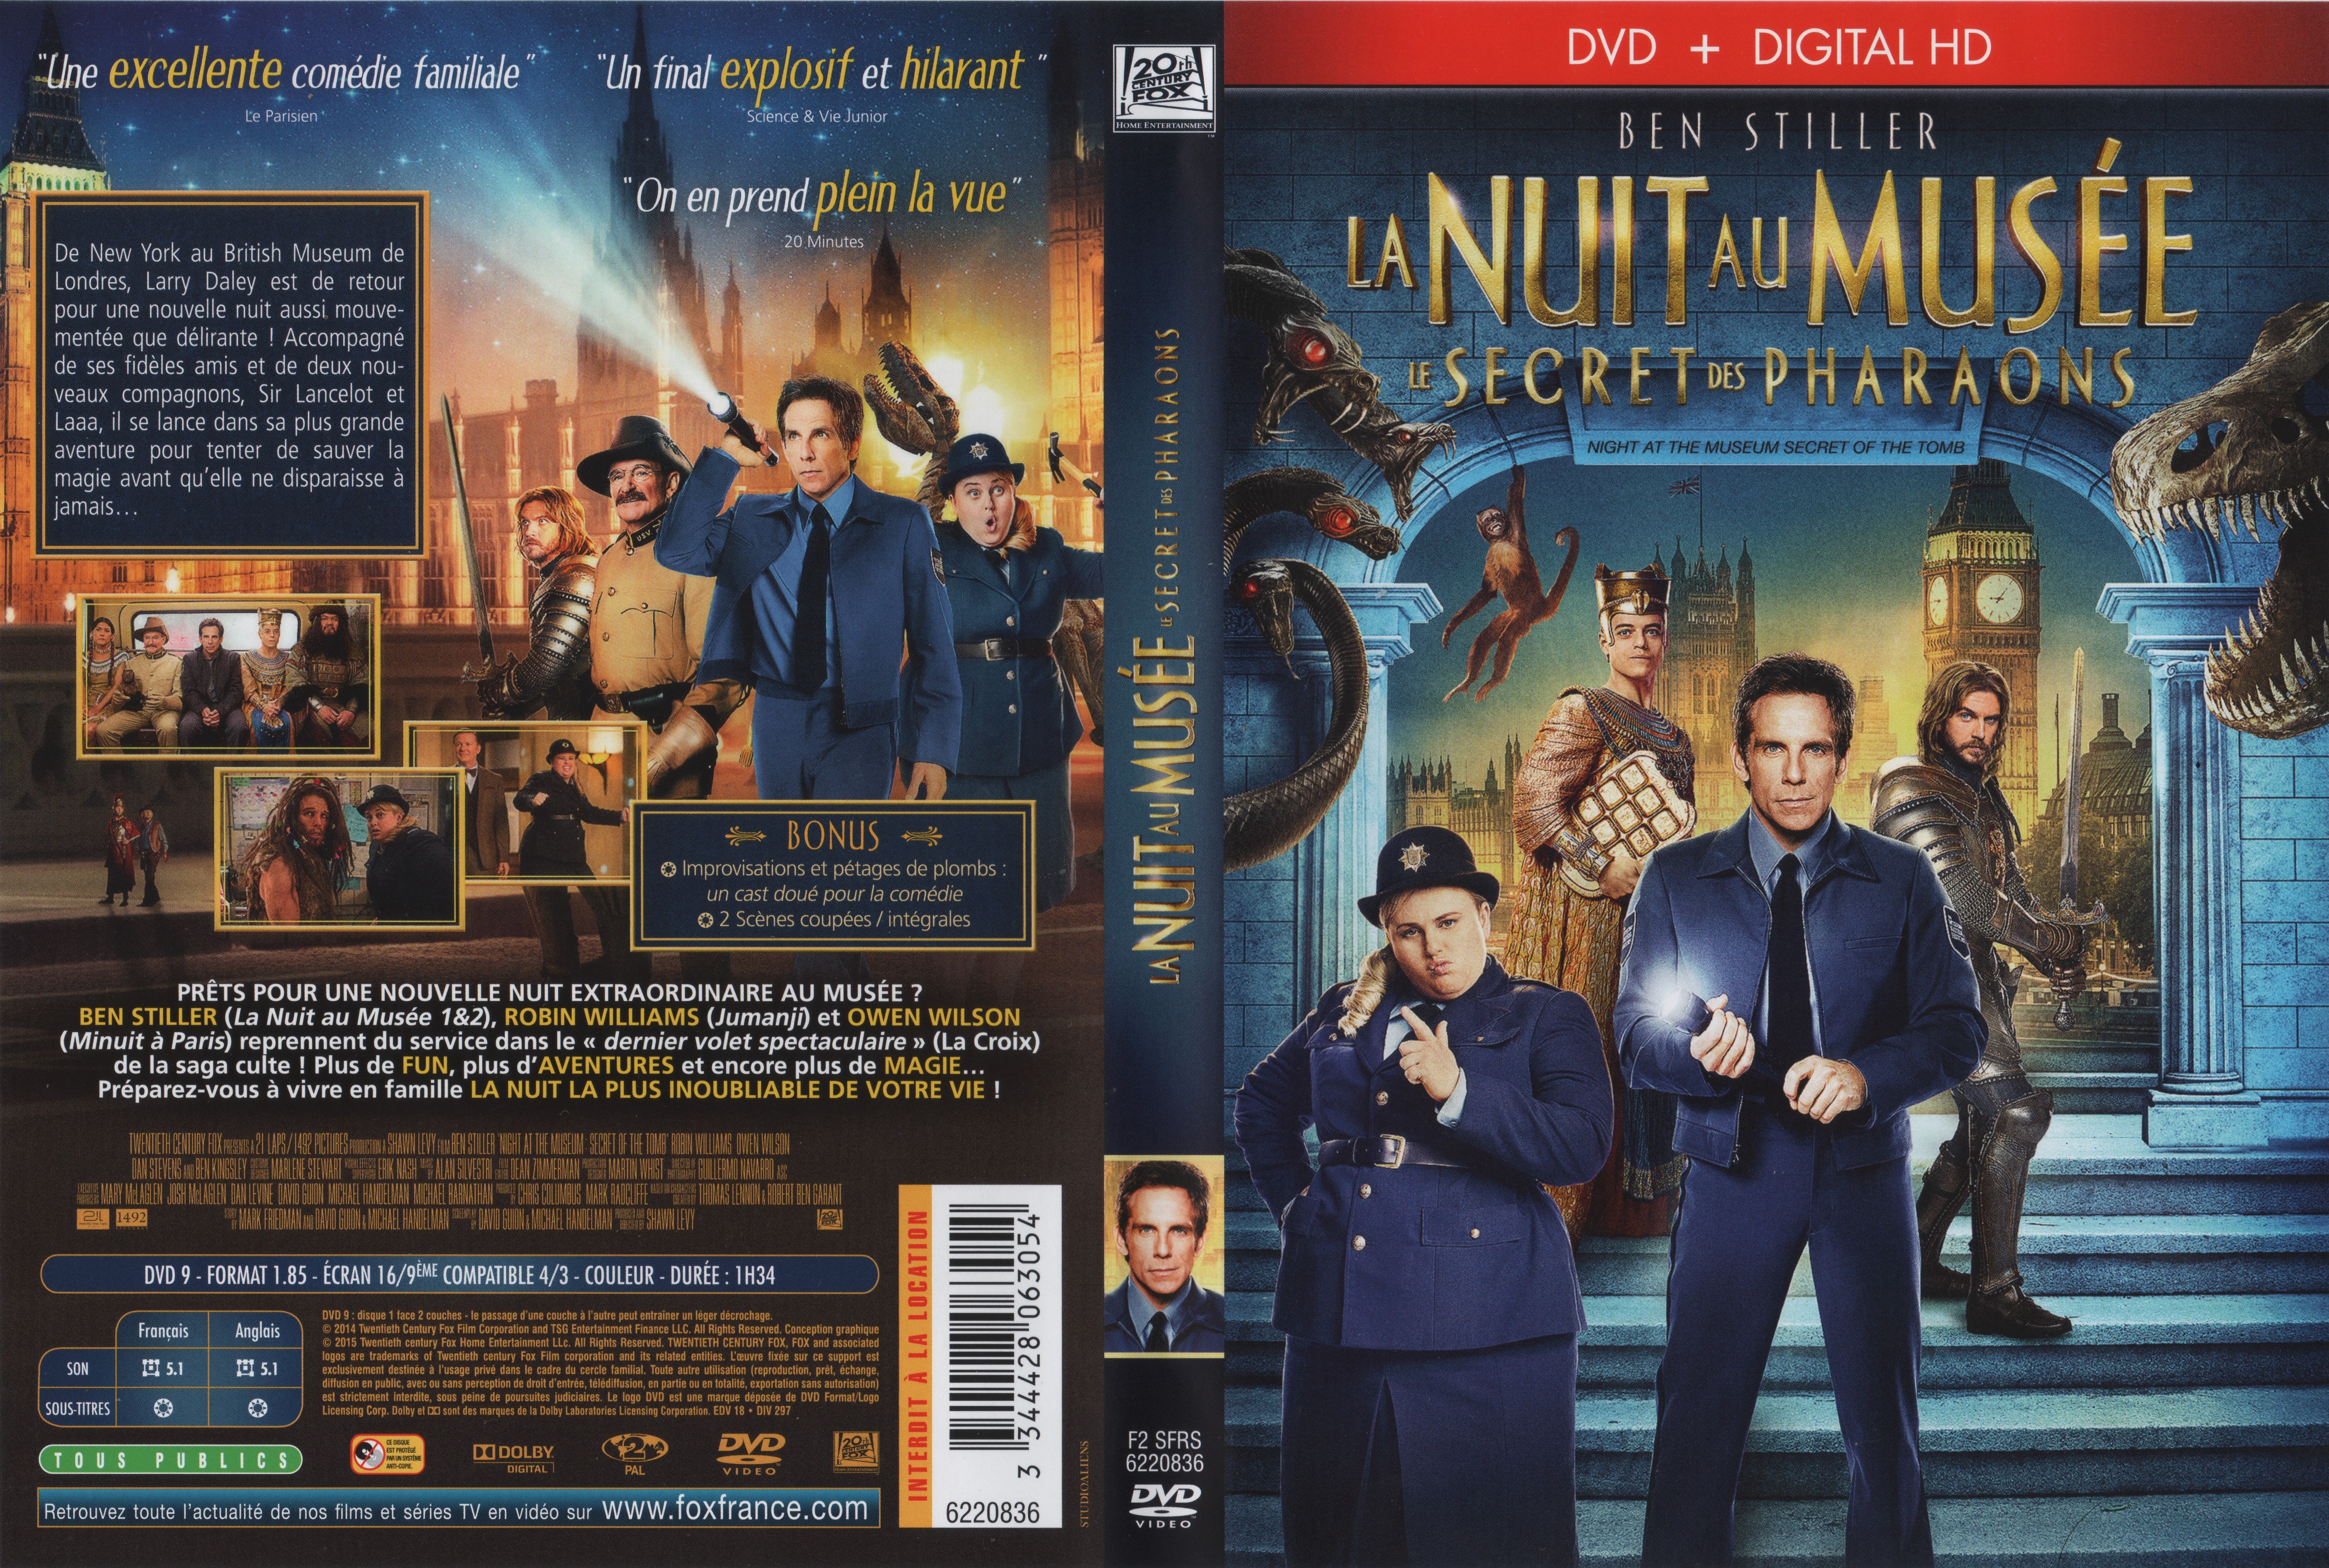 Jaquette DVD La Nuit au muse : Le Secret des Pharaons v2